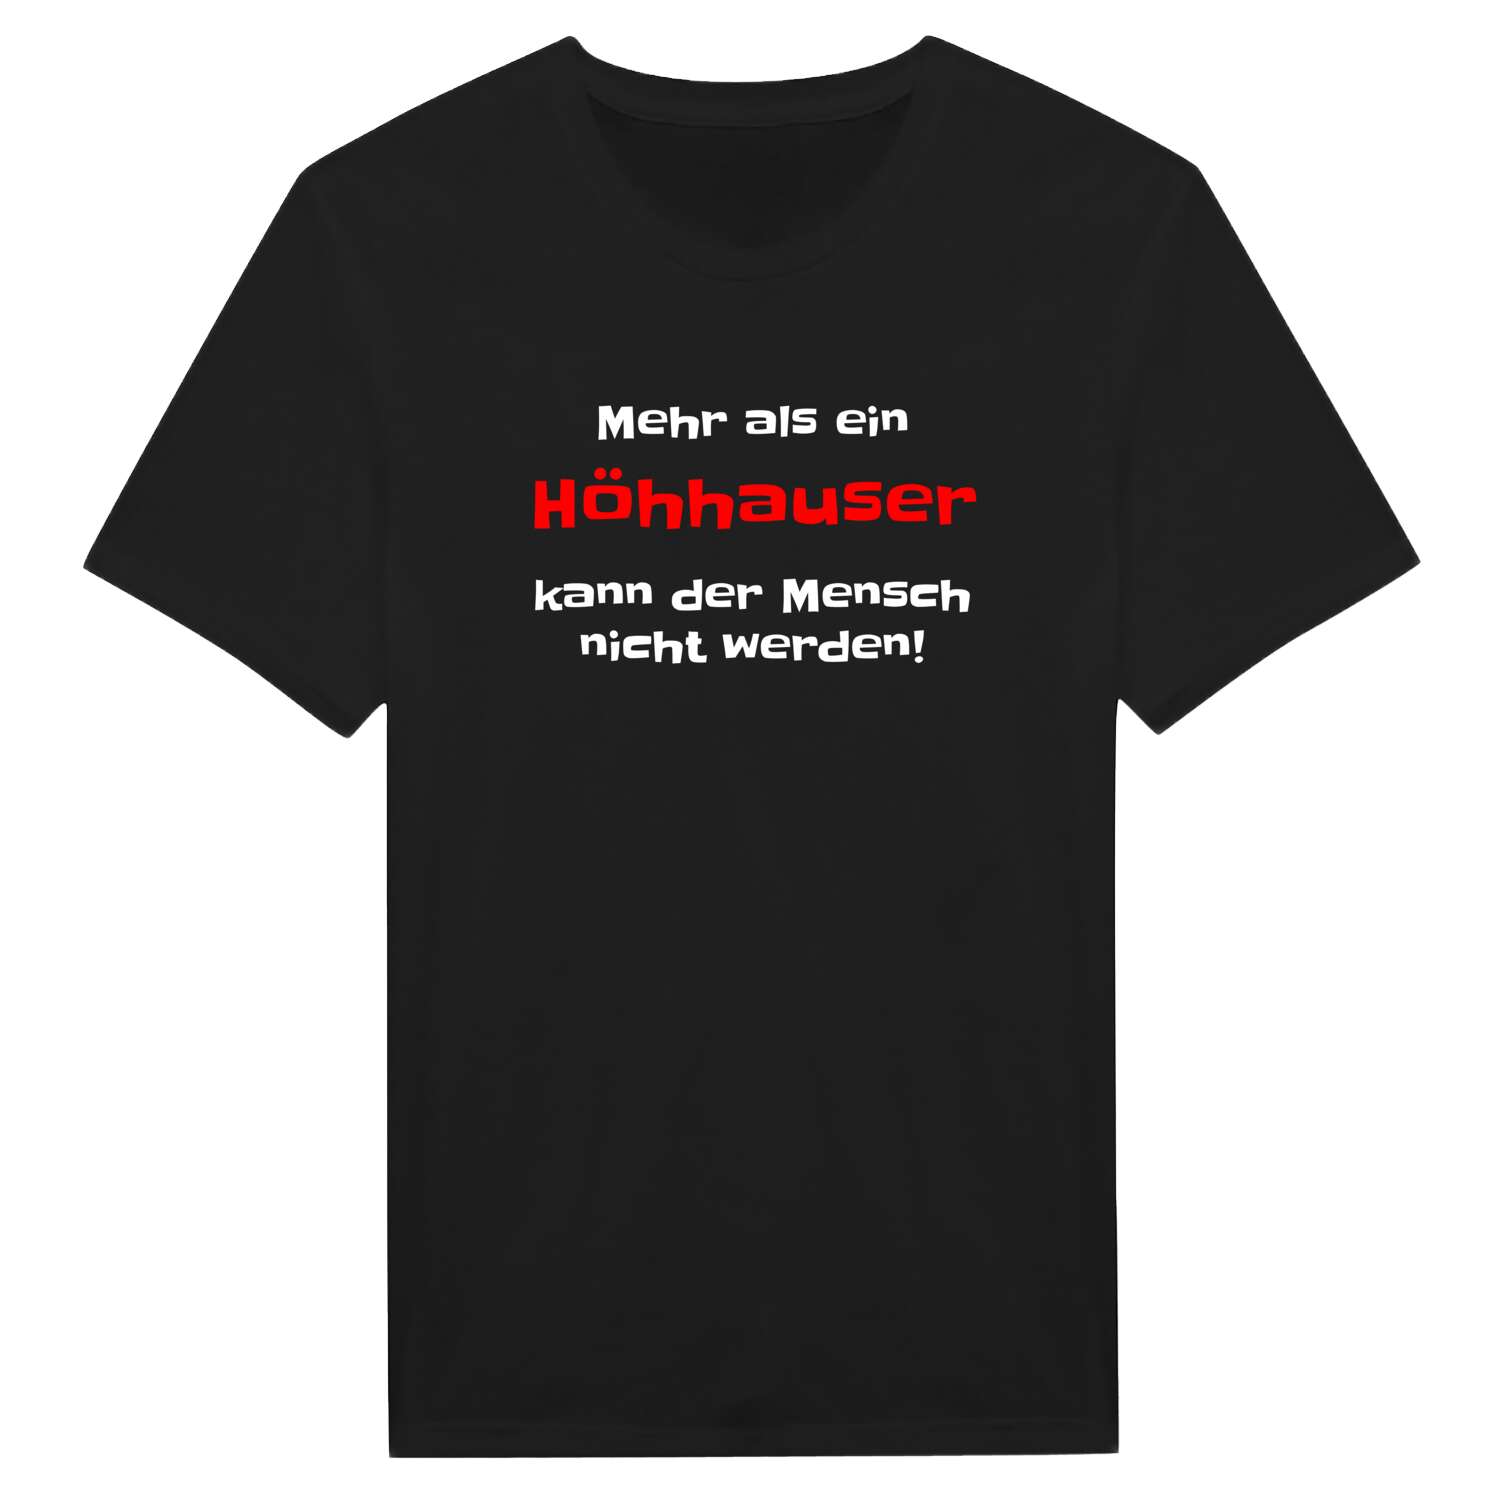 Höhhaus T-Shirt »Mehr als ein«